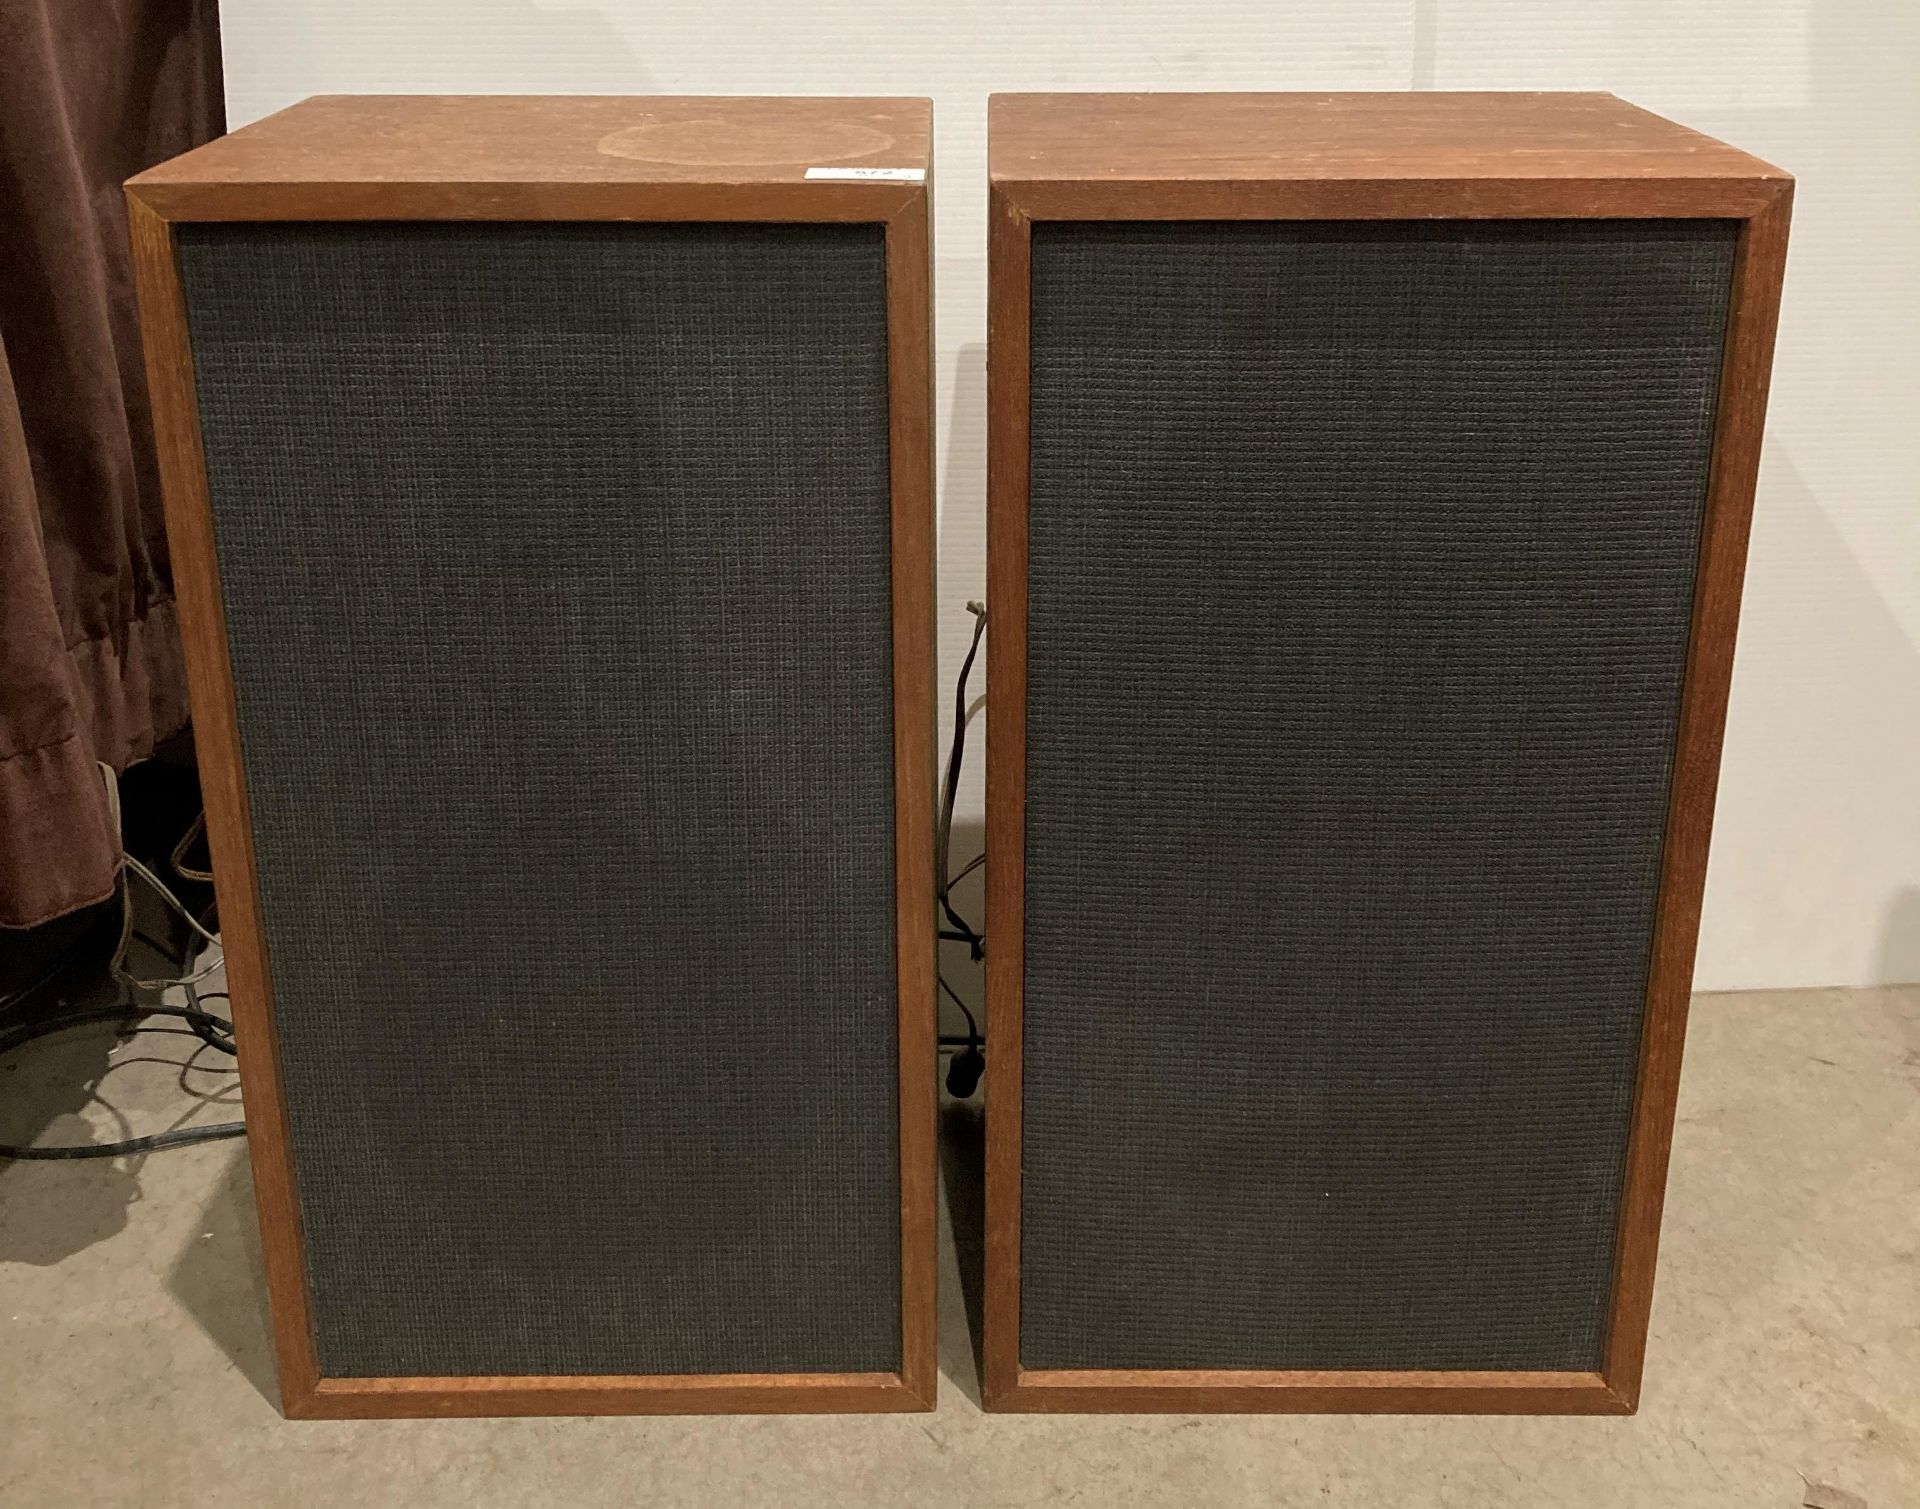 Pair of Jamo Cornet 3011 80w speakers and a pair of vintage Heathkit speakers model: 5CM-6 - Image 2 of 4